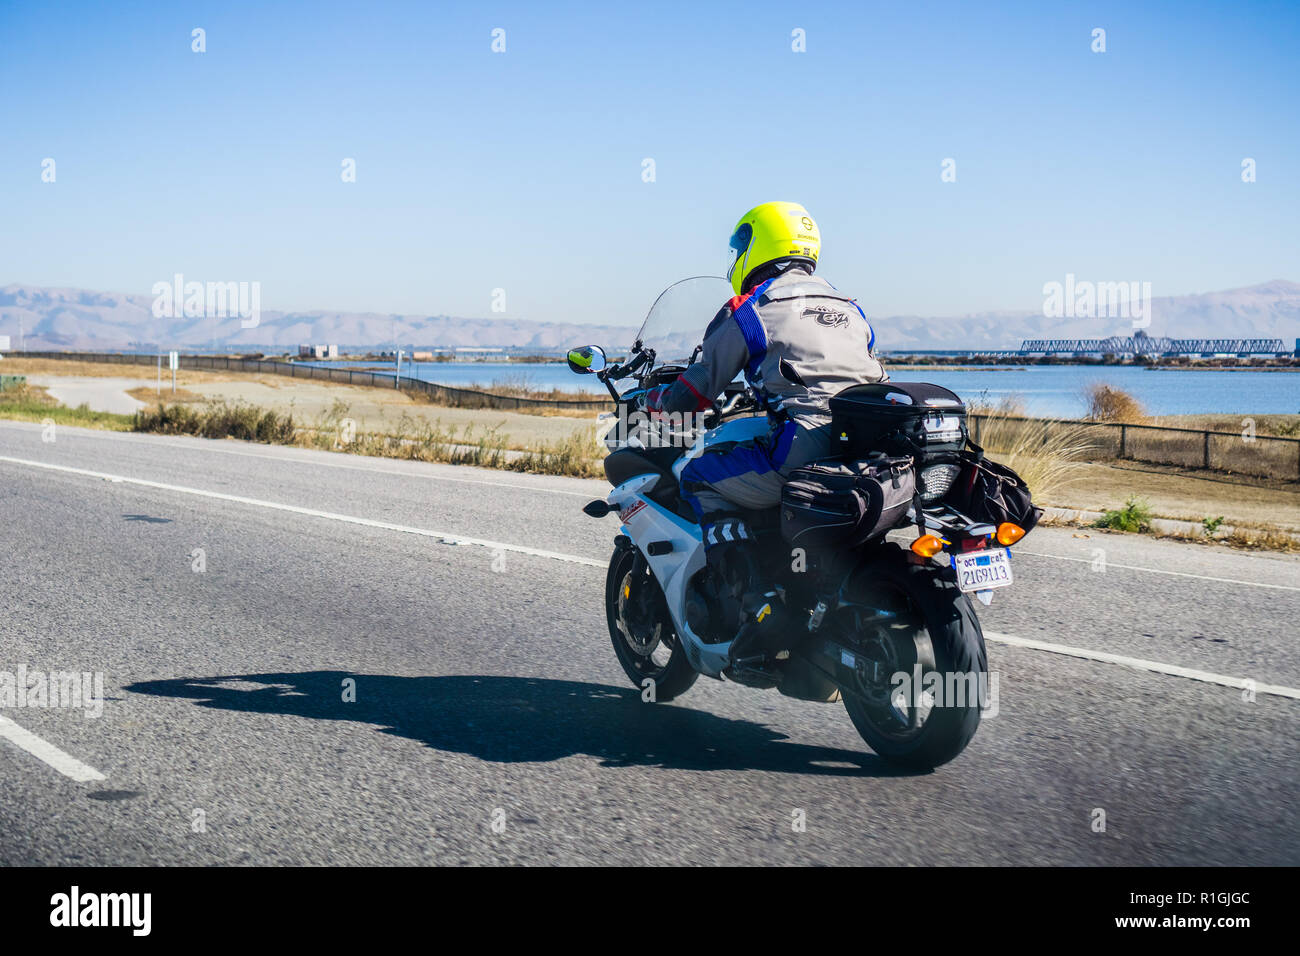 7 novembre 2018 - Menlo Park / CA / USA - Motorcyclist riding sur une autoroute, baie de San Francisco Banque D'Images